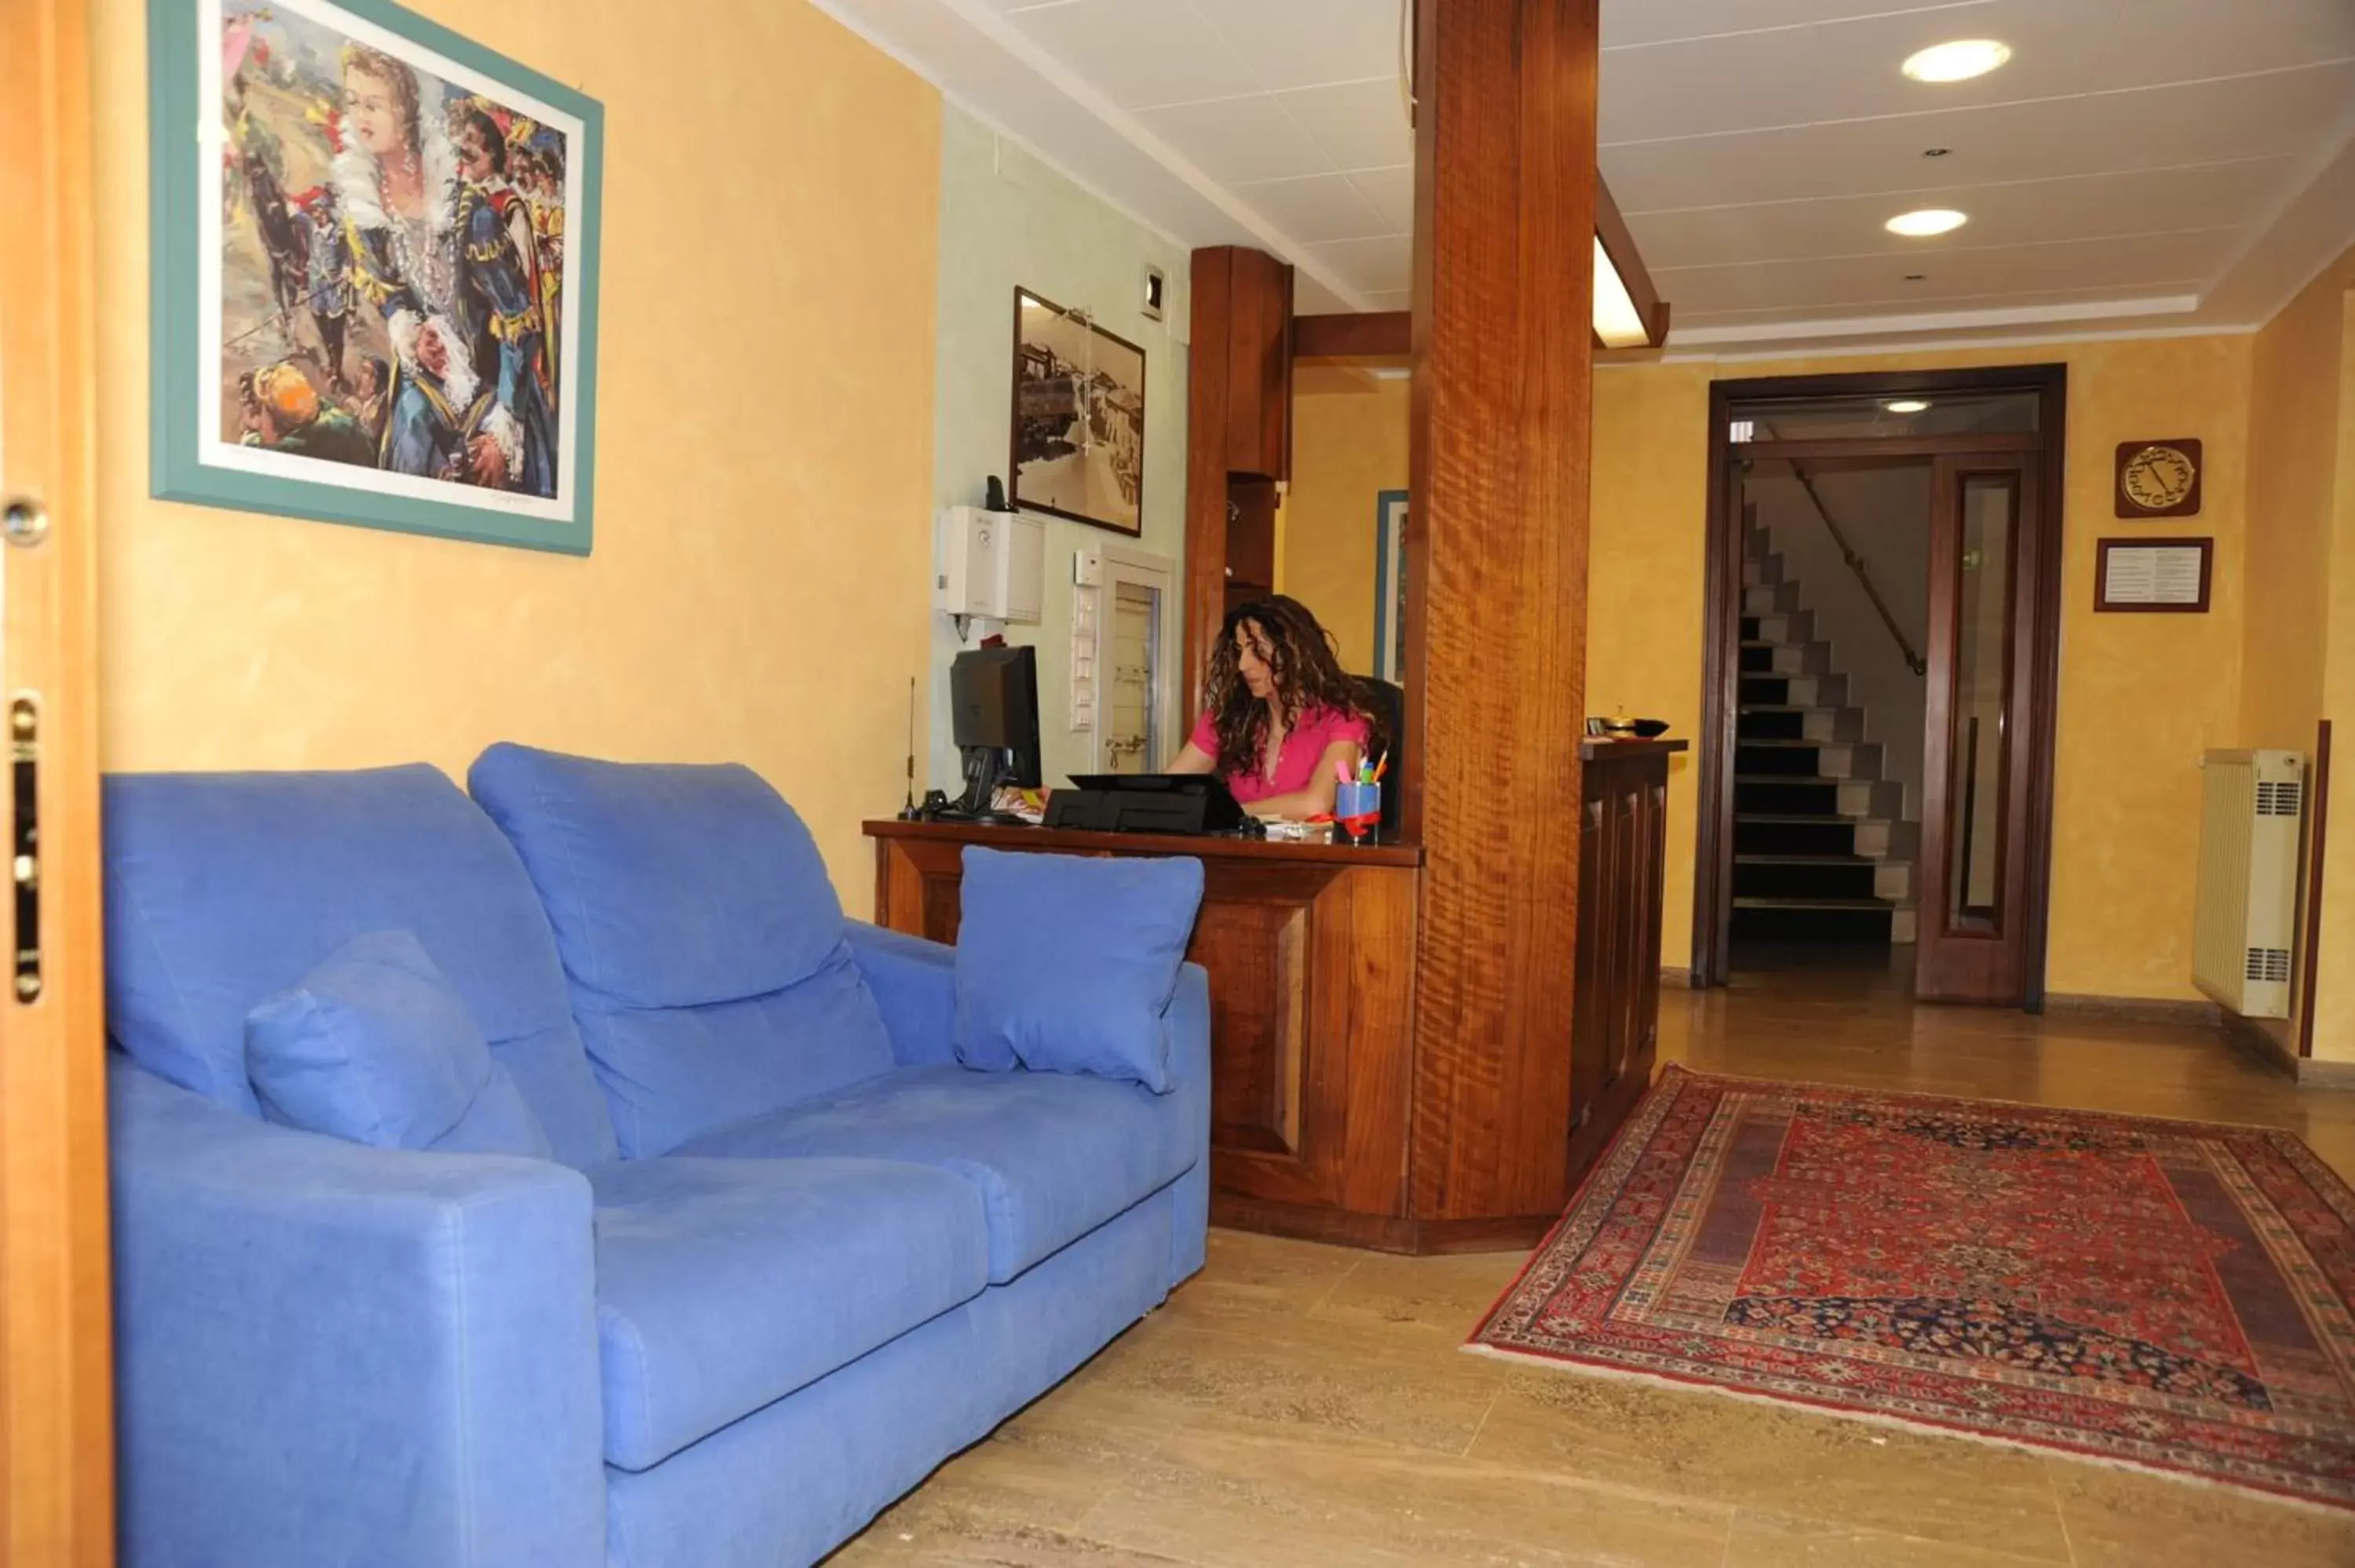 Lobby or reception, Lobby/Reception in Hotel Valentini Inn